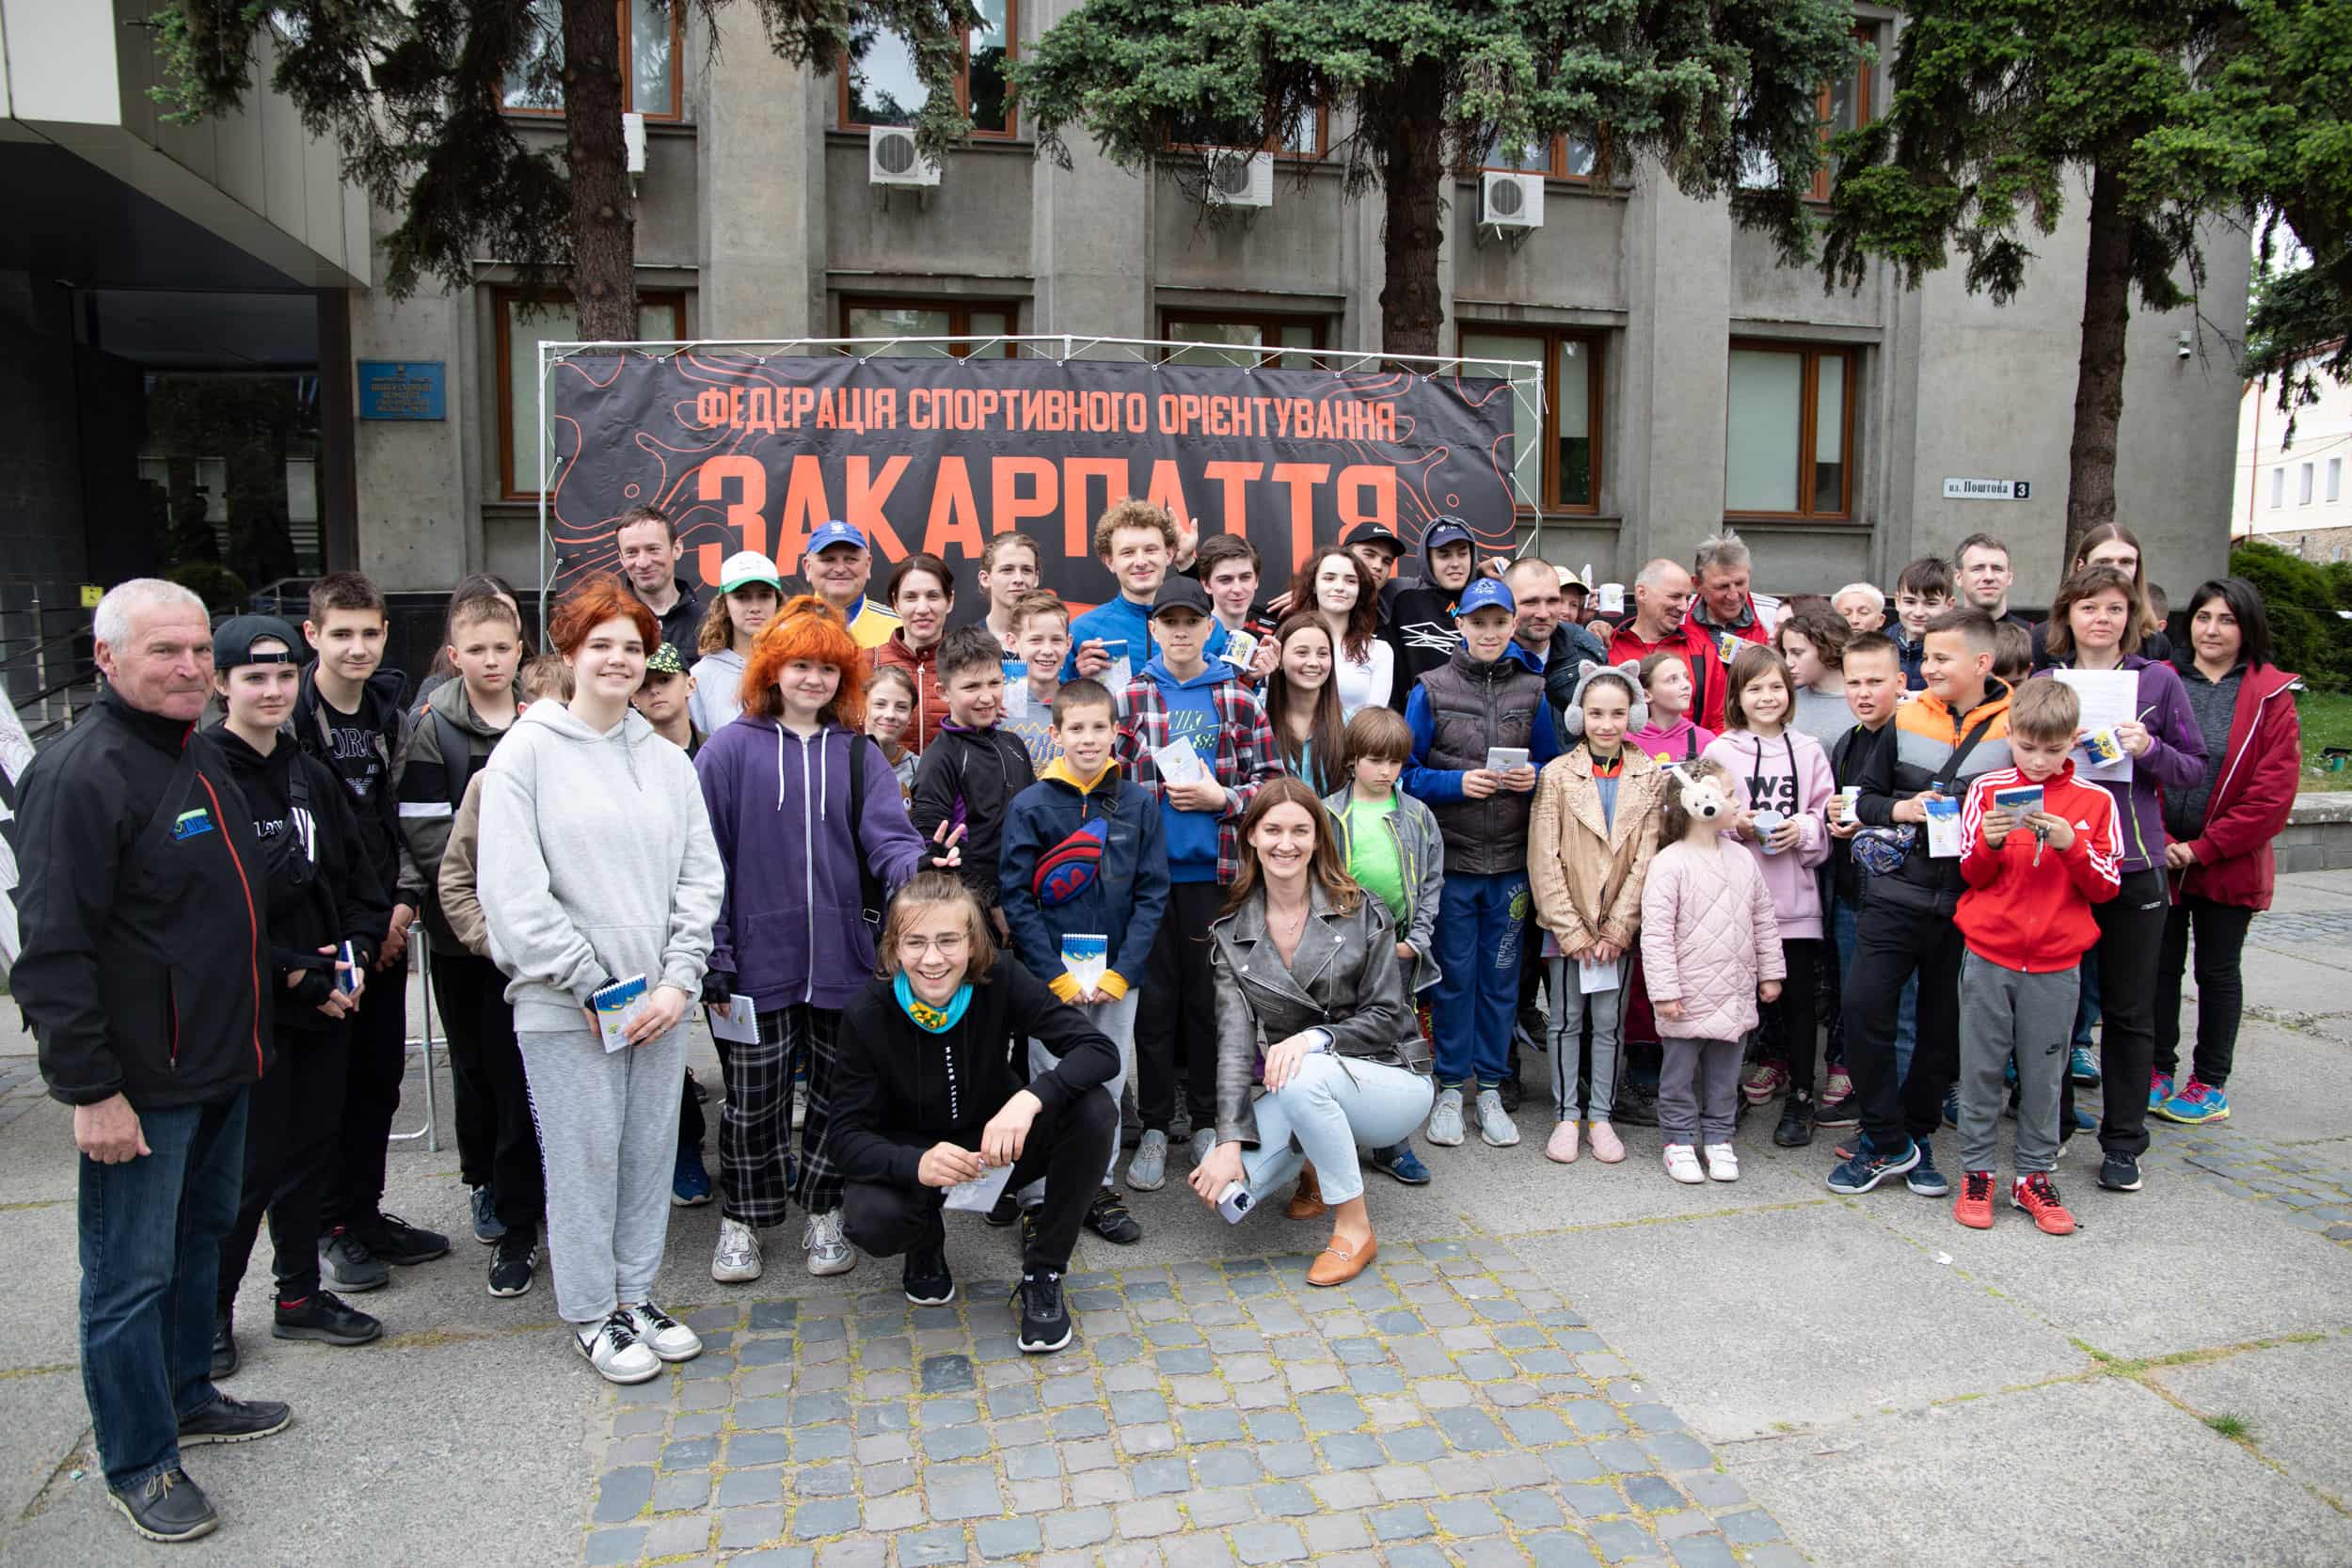 Пізнавальний краєзнавчий квест з елементами спортивного орієнтування провели до Міжнародного дня сім’ї в Ужгороді